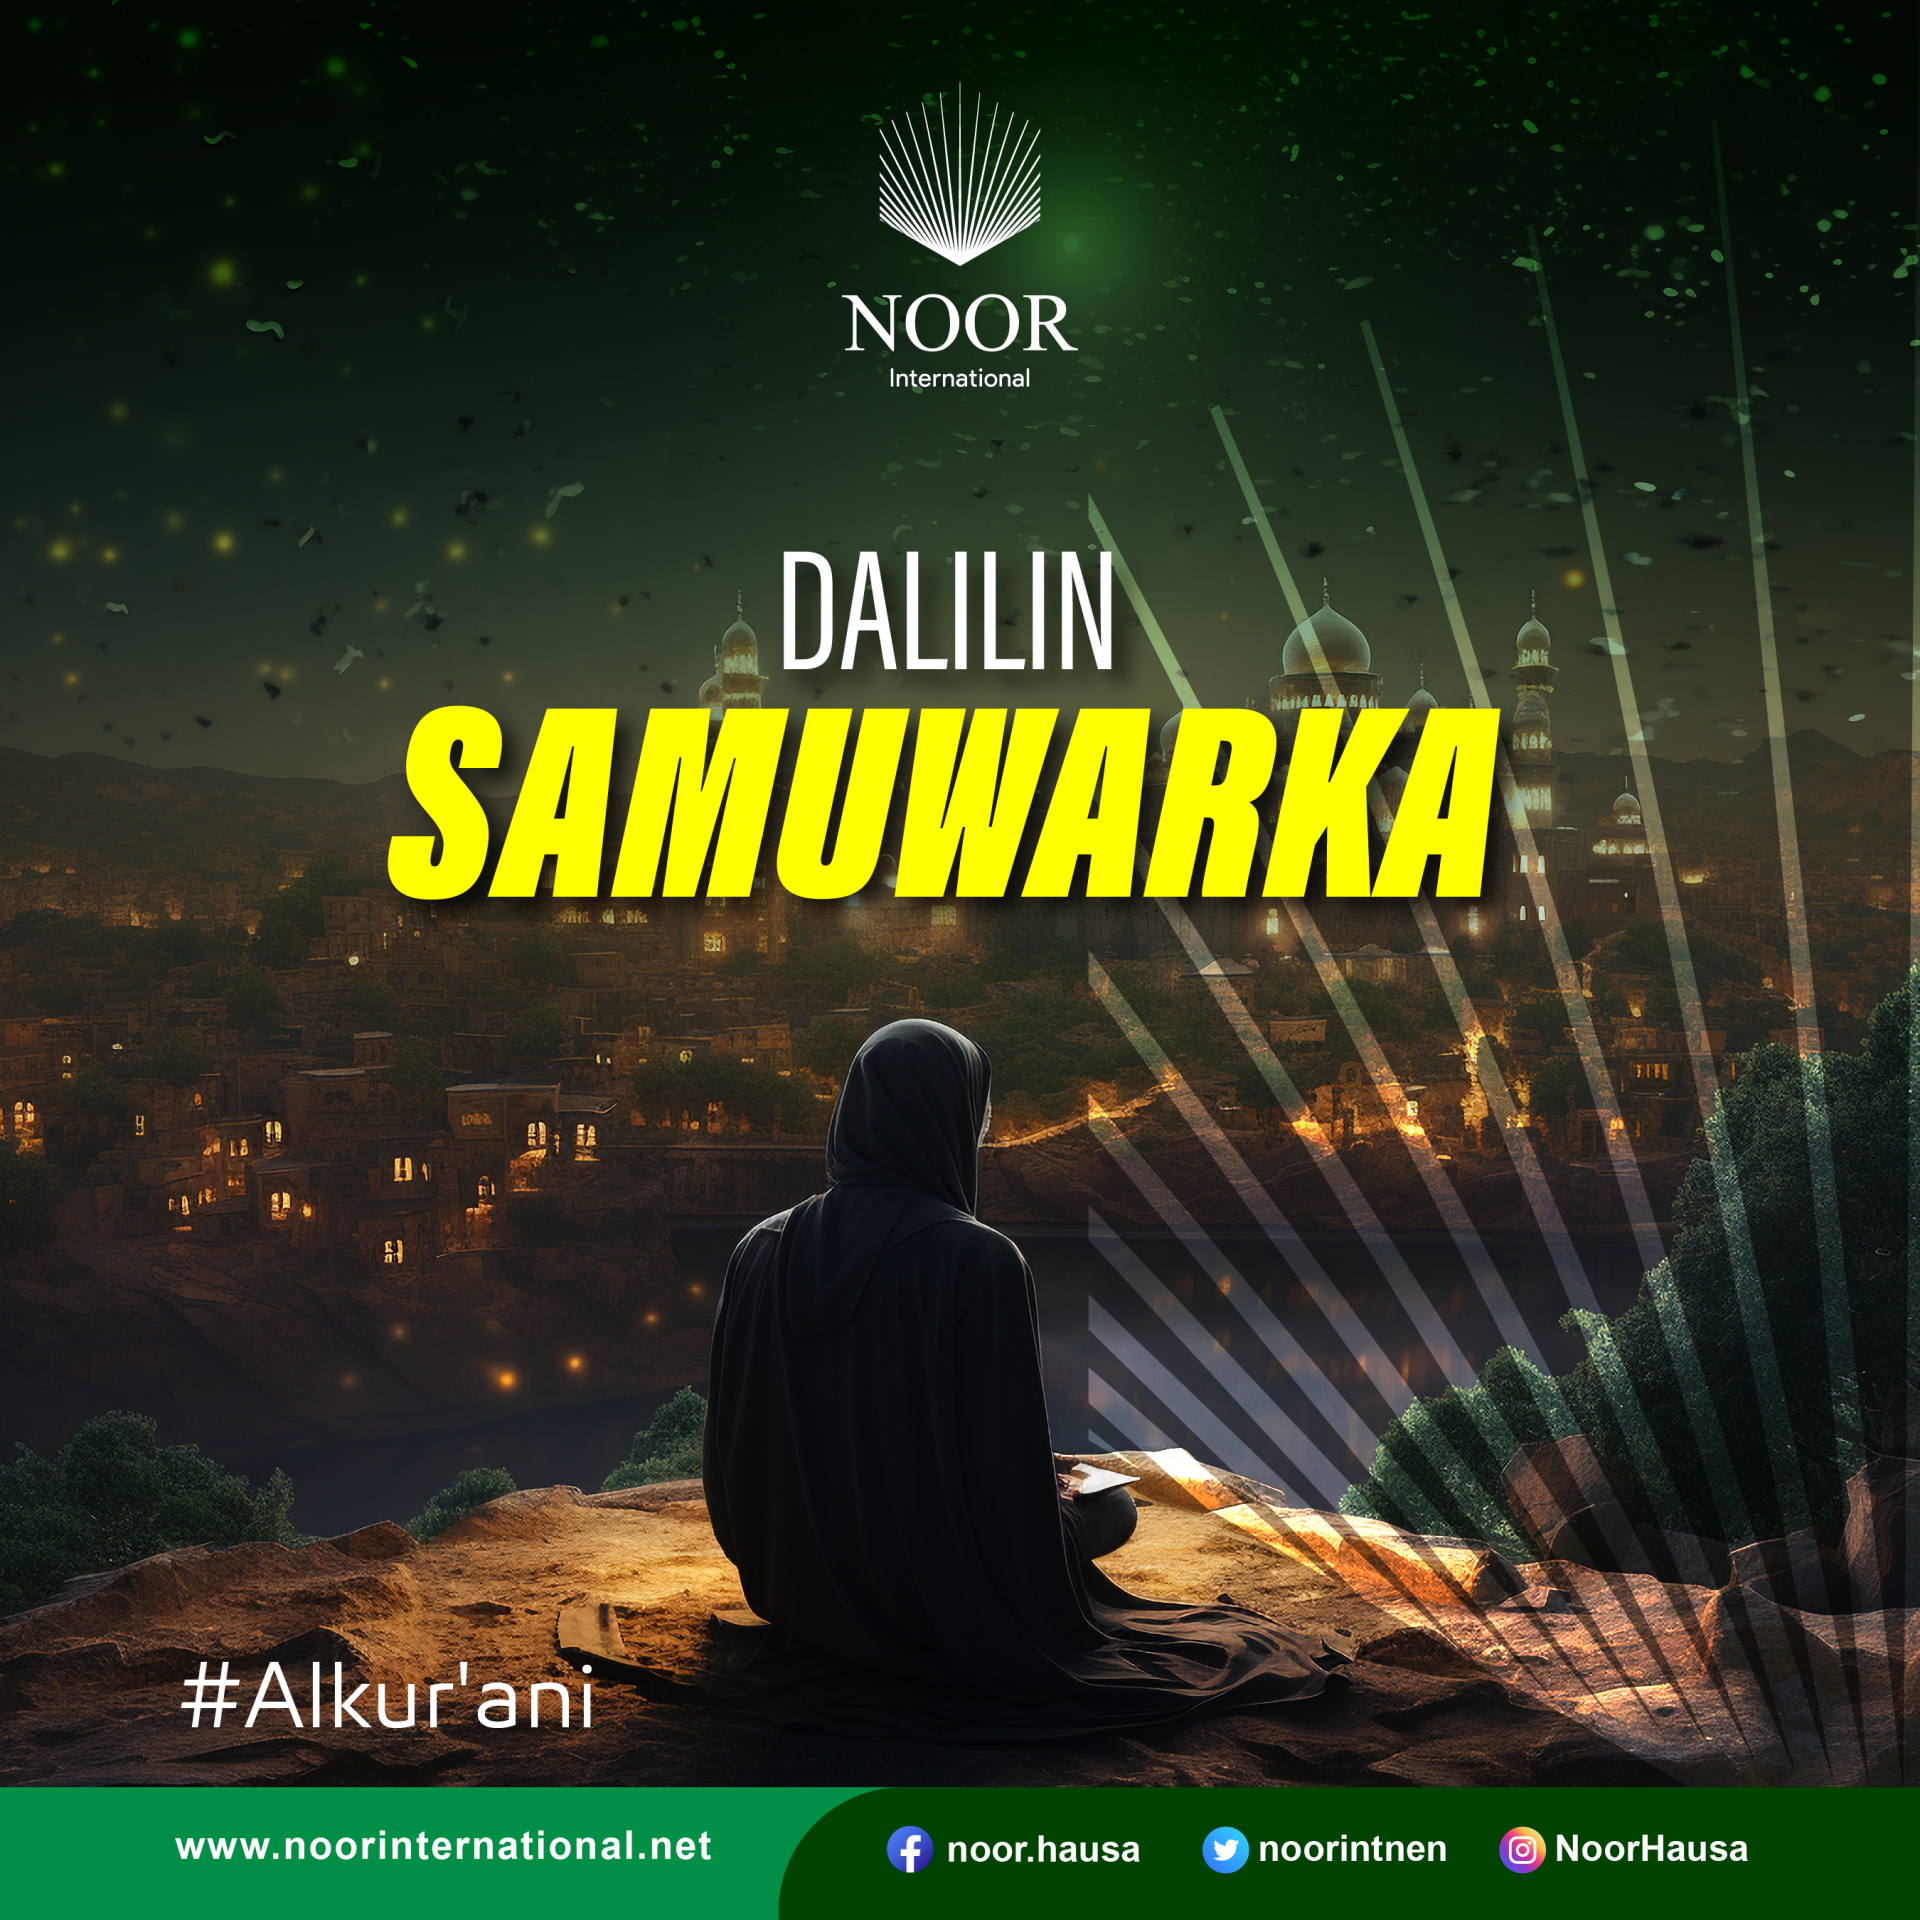 Dalilin Samuwarka #Alkur'ani